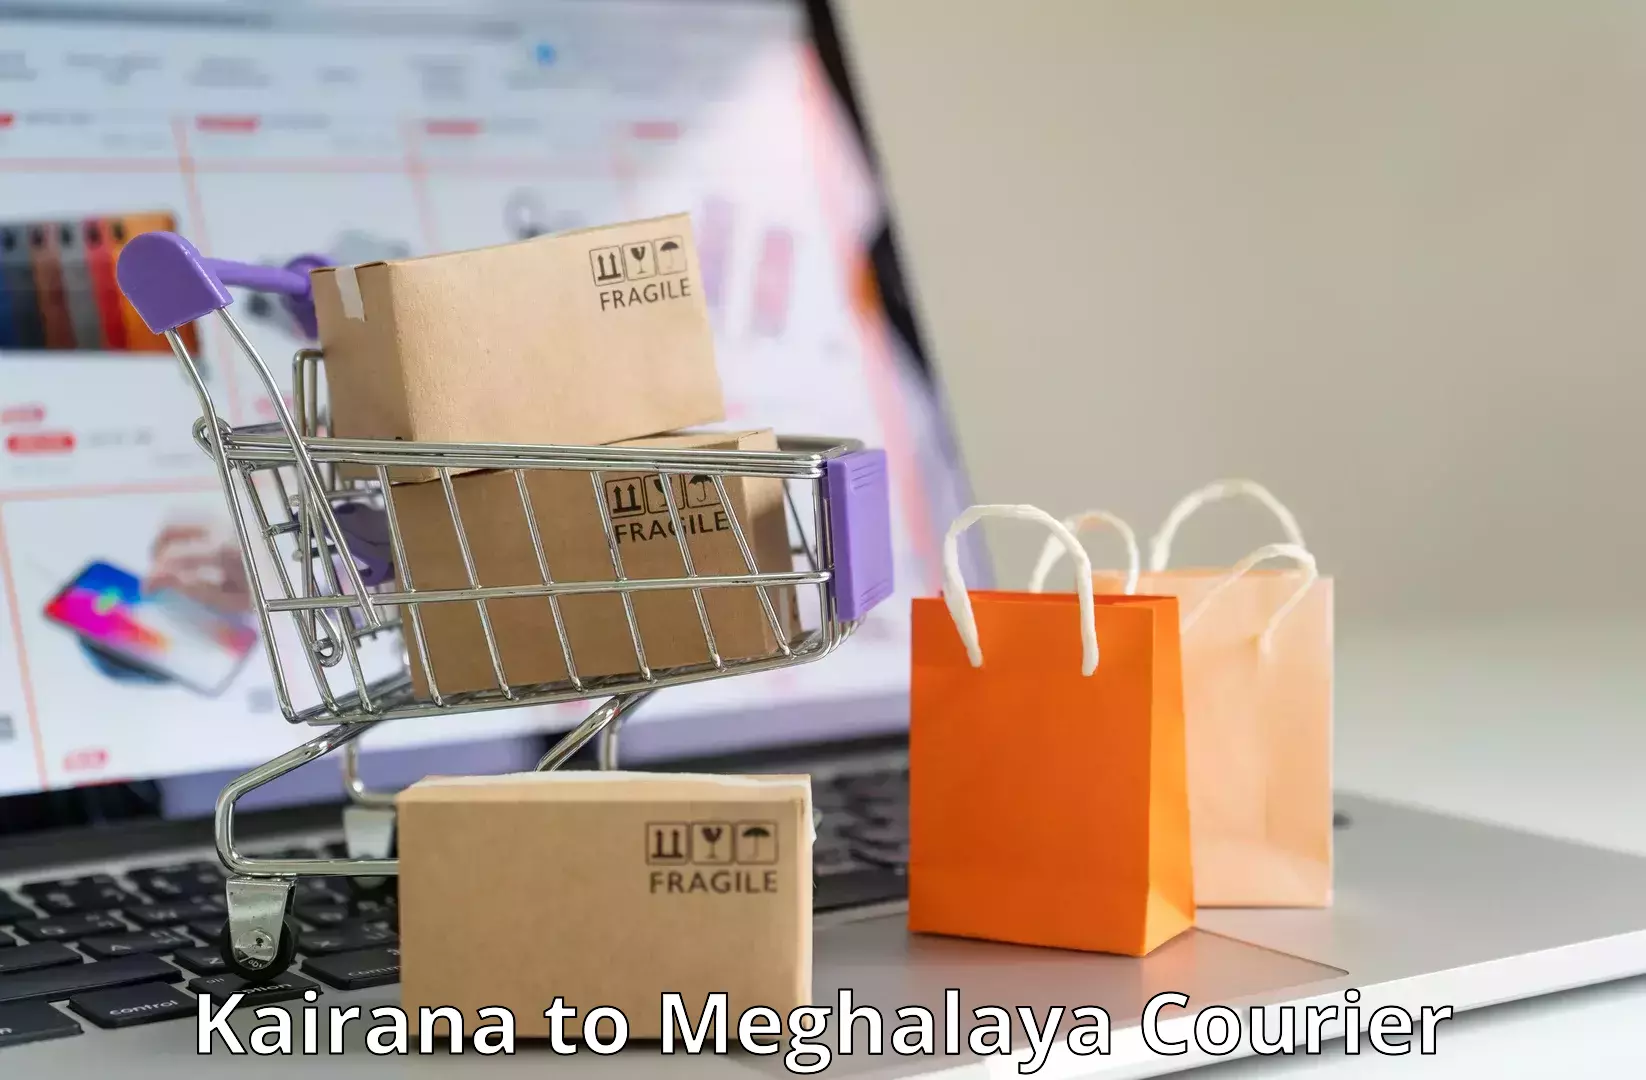 Supply chain efficiency Kairana to Shillong